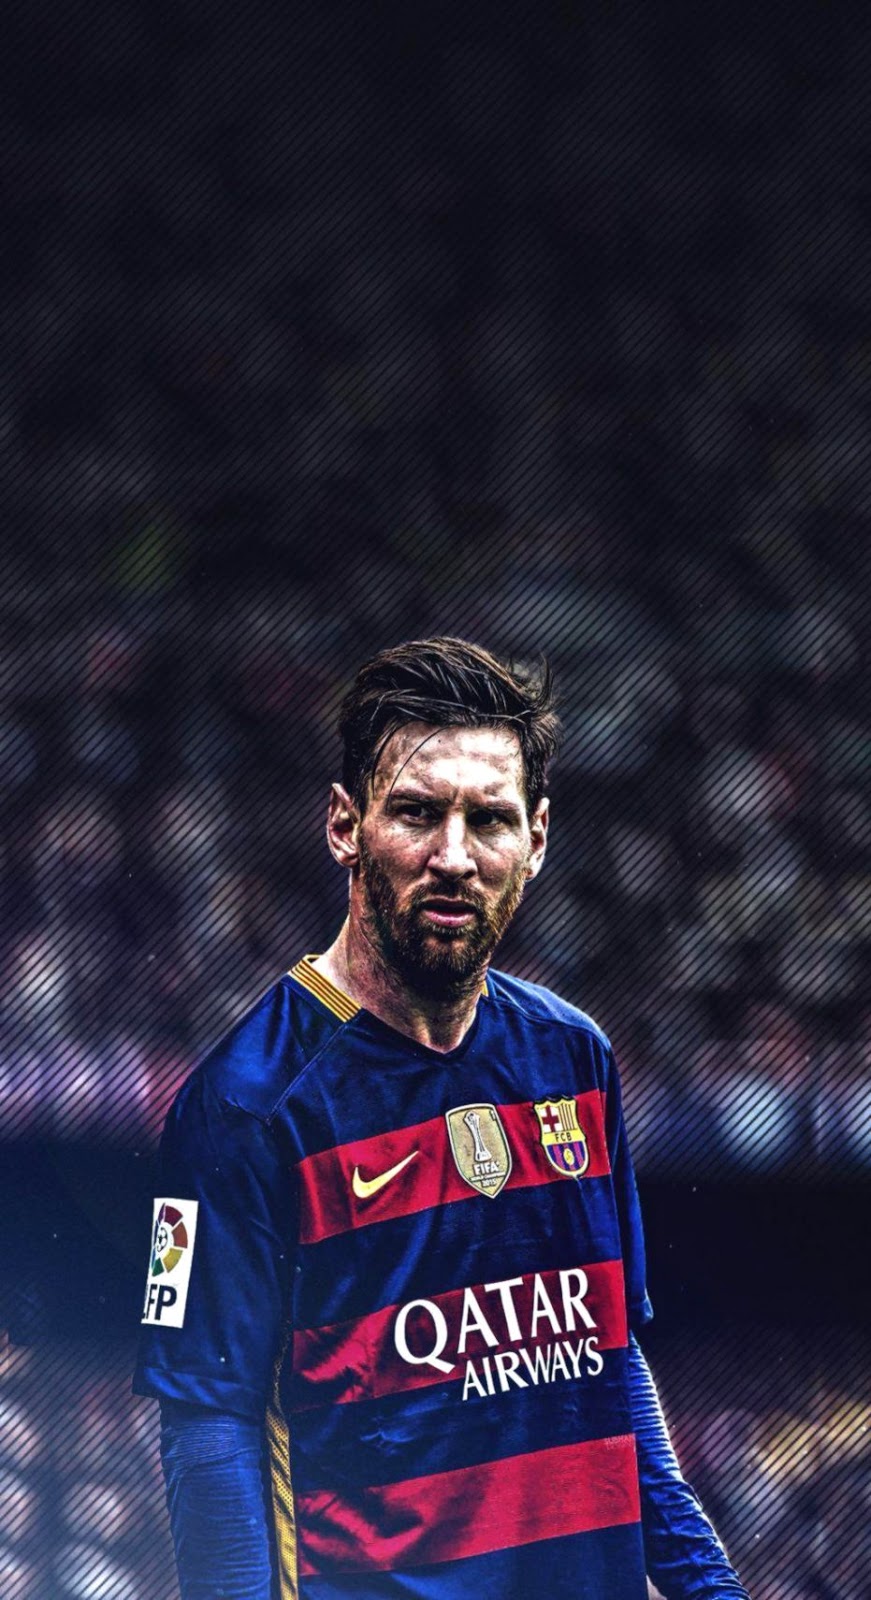 Hãy thử tưởng tượng khi trái bóng rổ nhẹ nhàng di chuyển trên màn hình iPhone của bạn, sử dụng hình nền Messi đầy màu sắc. Bối cảnh bóng đá đầy lôi cuốn sẽ khiến bạn cảm thấy như đang ở một sân bóng lớn và ngắm nhìn Messi từ góc độ khác.